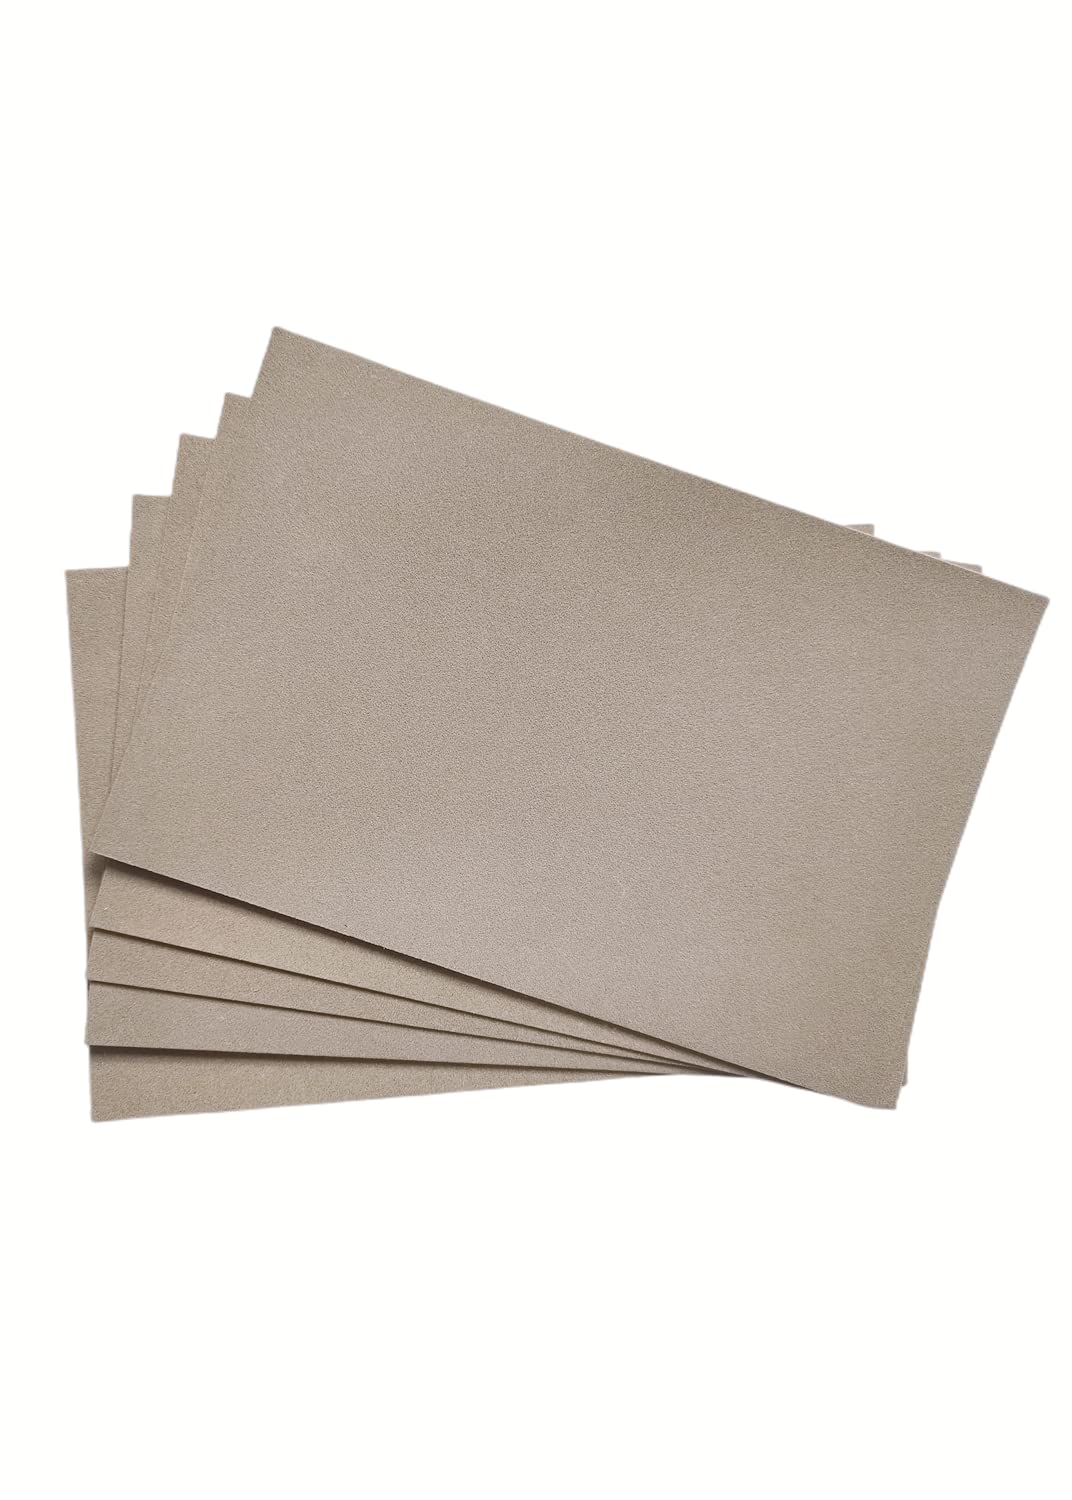 Sanded Pastel Paper